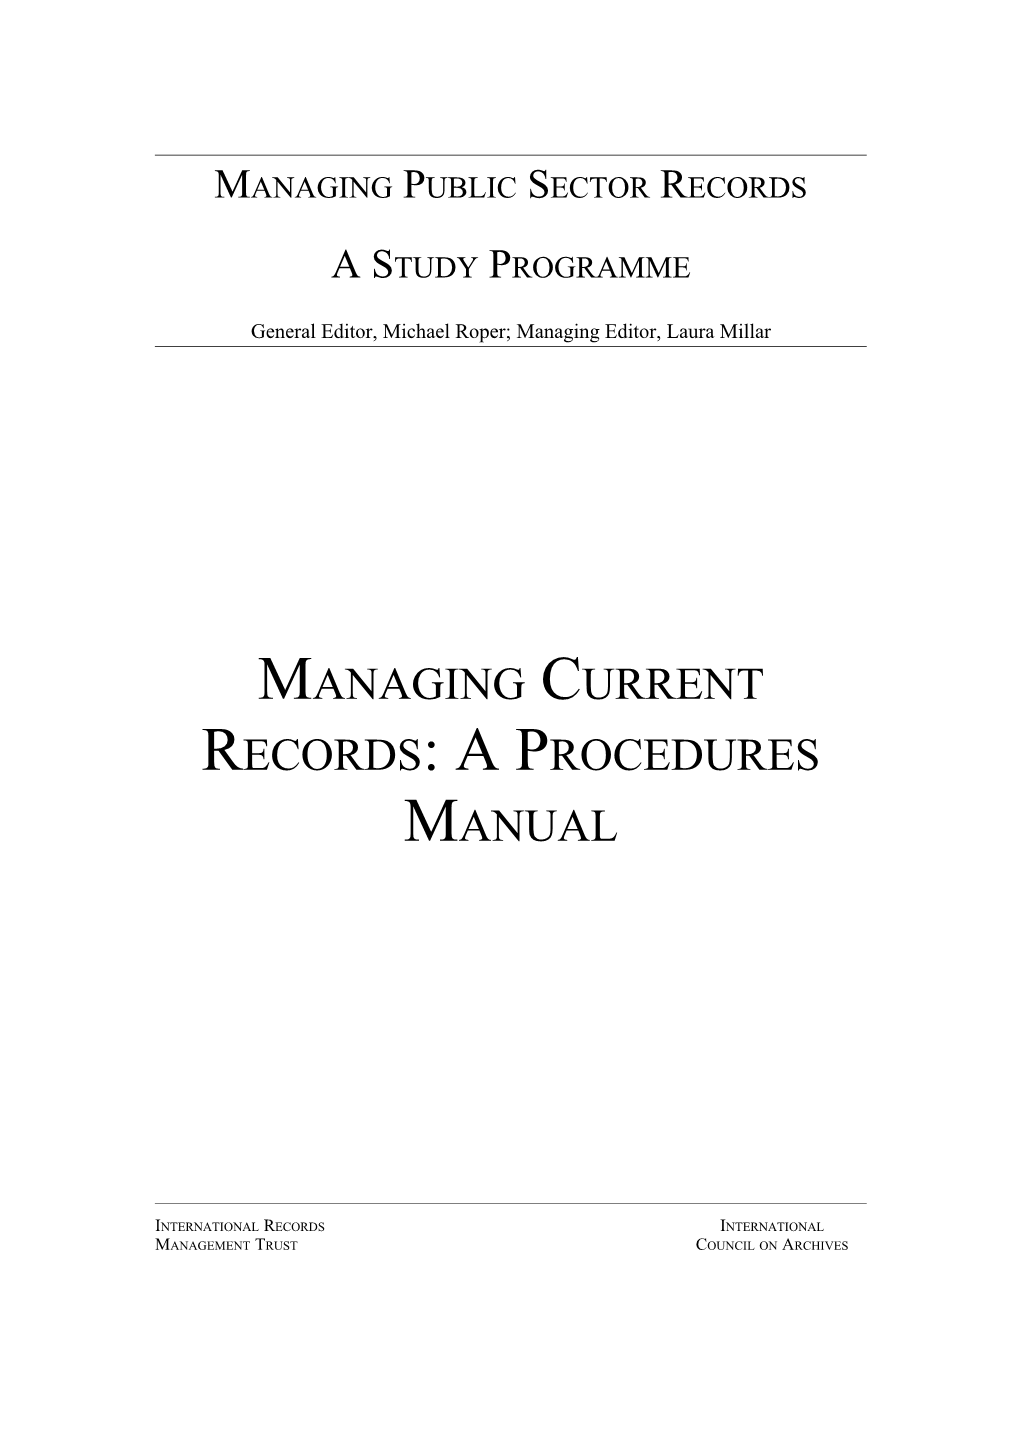 Managing Current Records: a Procedures Manual